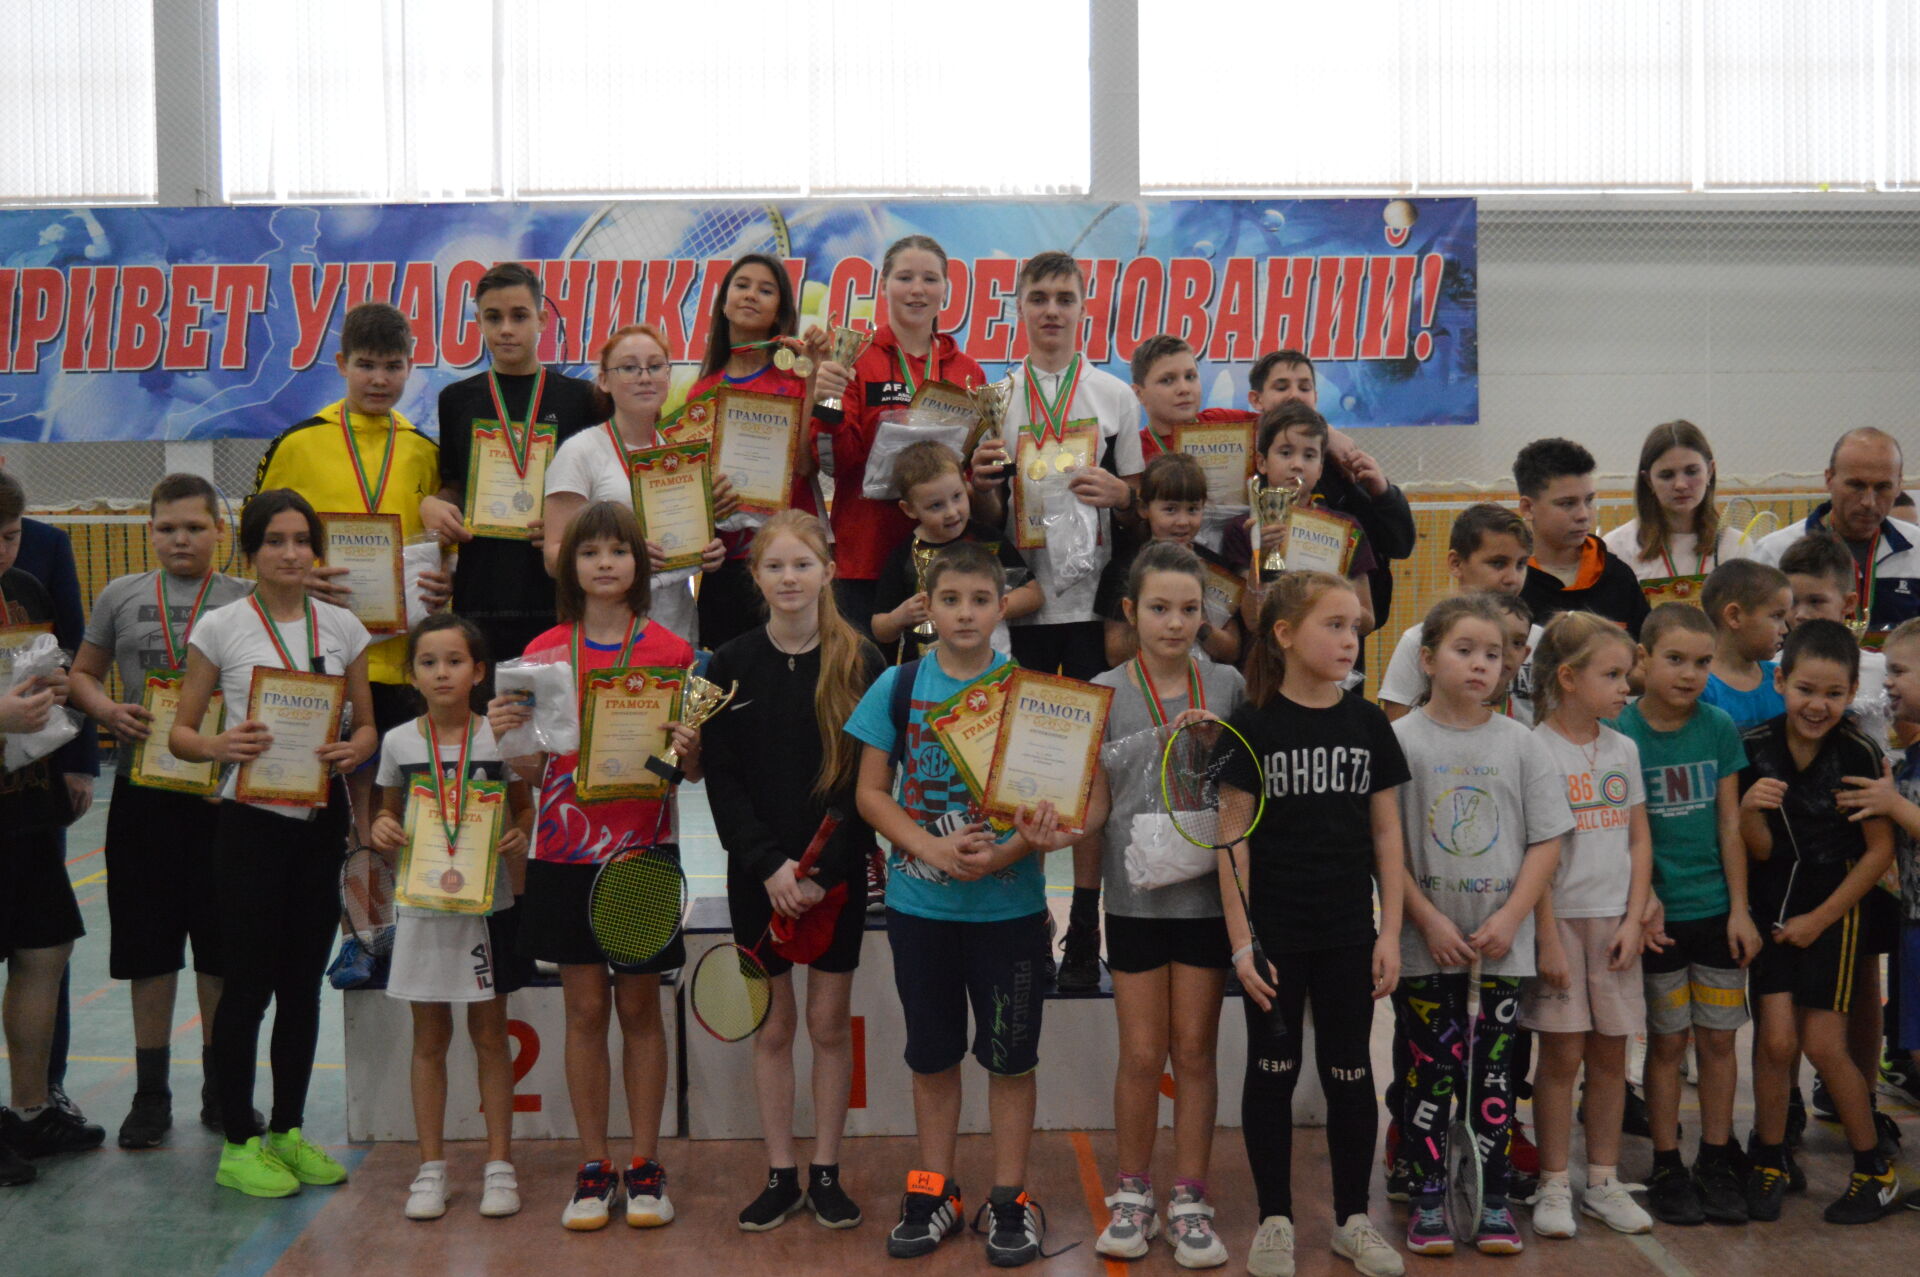 В СОК "Акчарлак" прошли районные соревнования по бадминтону